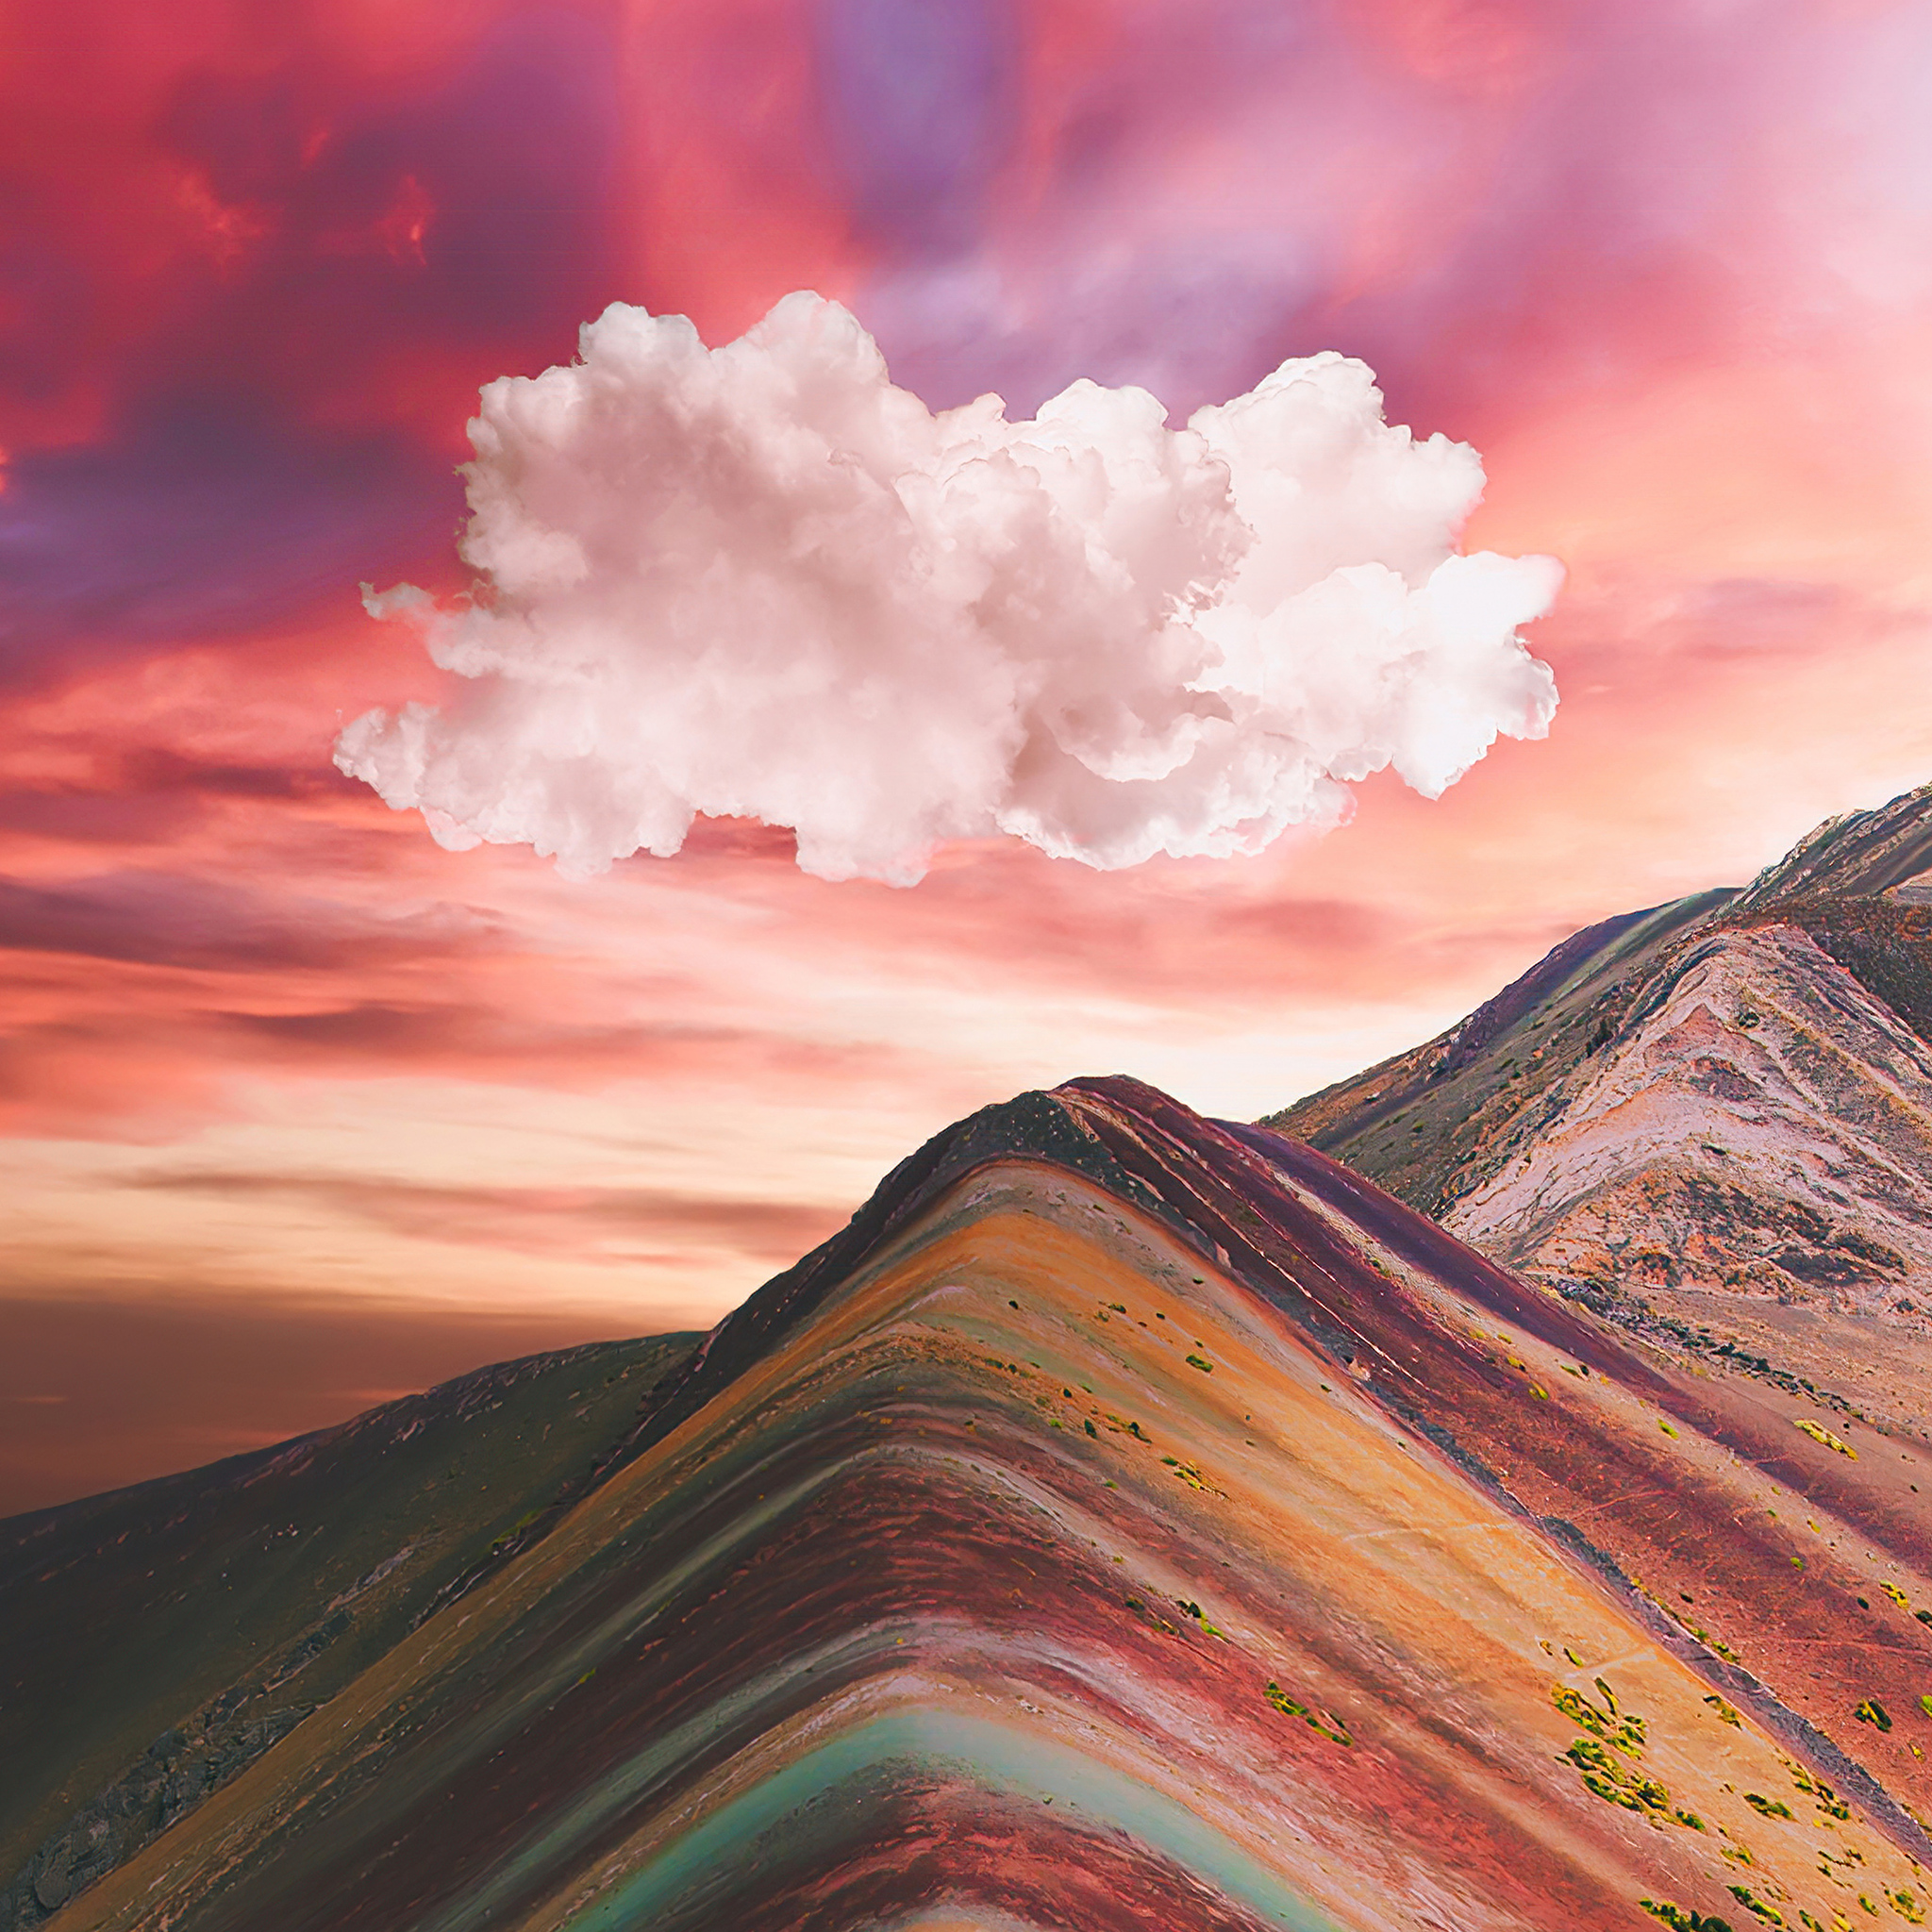 Núi cầu vồng: Xem những hình ảnh đẹp như mơ về núi cầu vồng. Sắc màu tươi sáng và hòa quyện với nhau tạo nên cảm giác kỳ diệu, đồng thời mang đến một trải nghiệm tuyệt vời cho người xem.